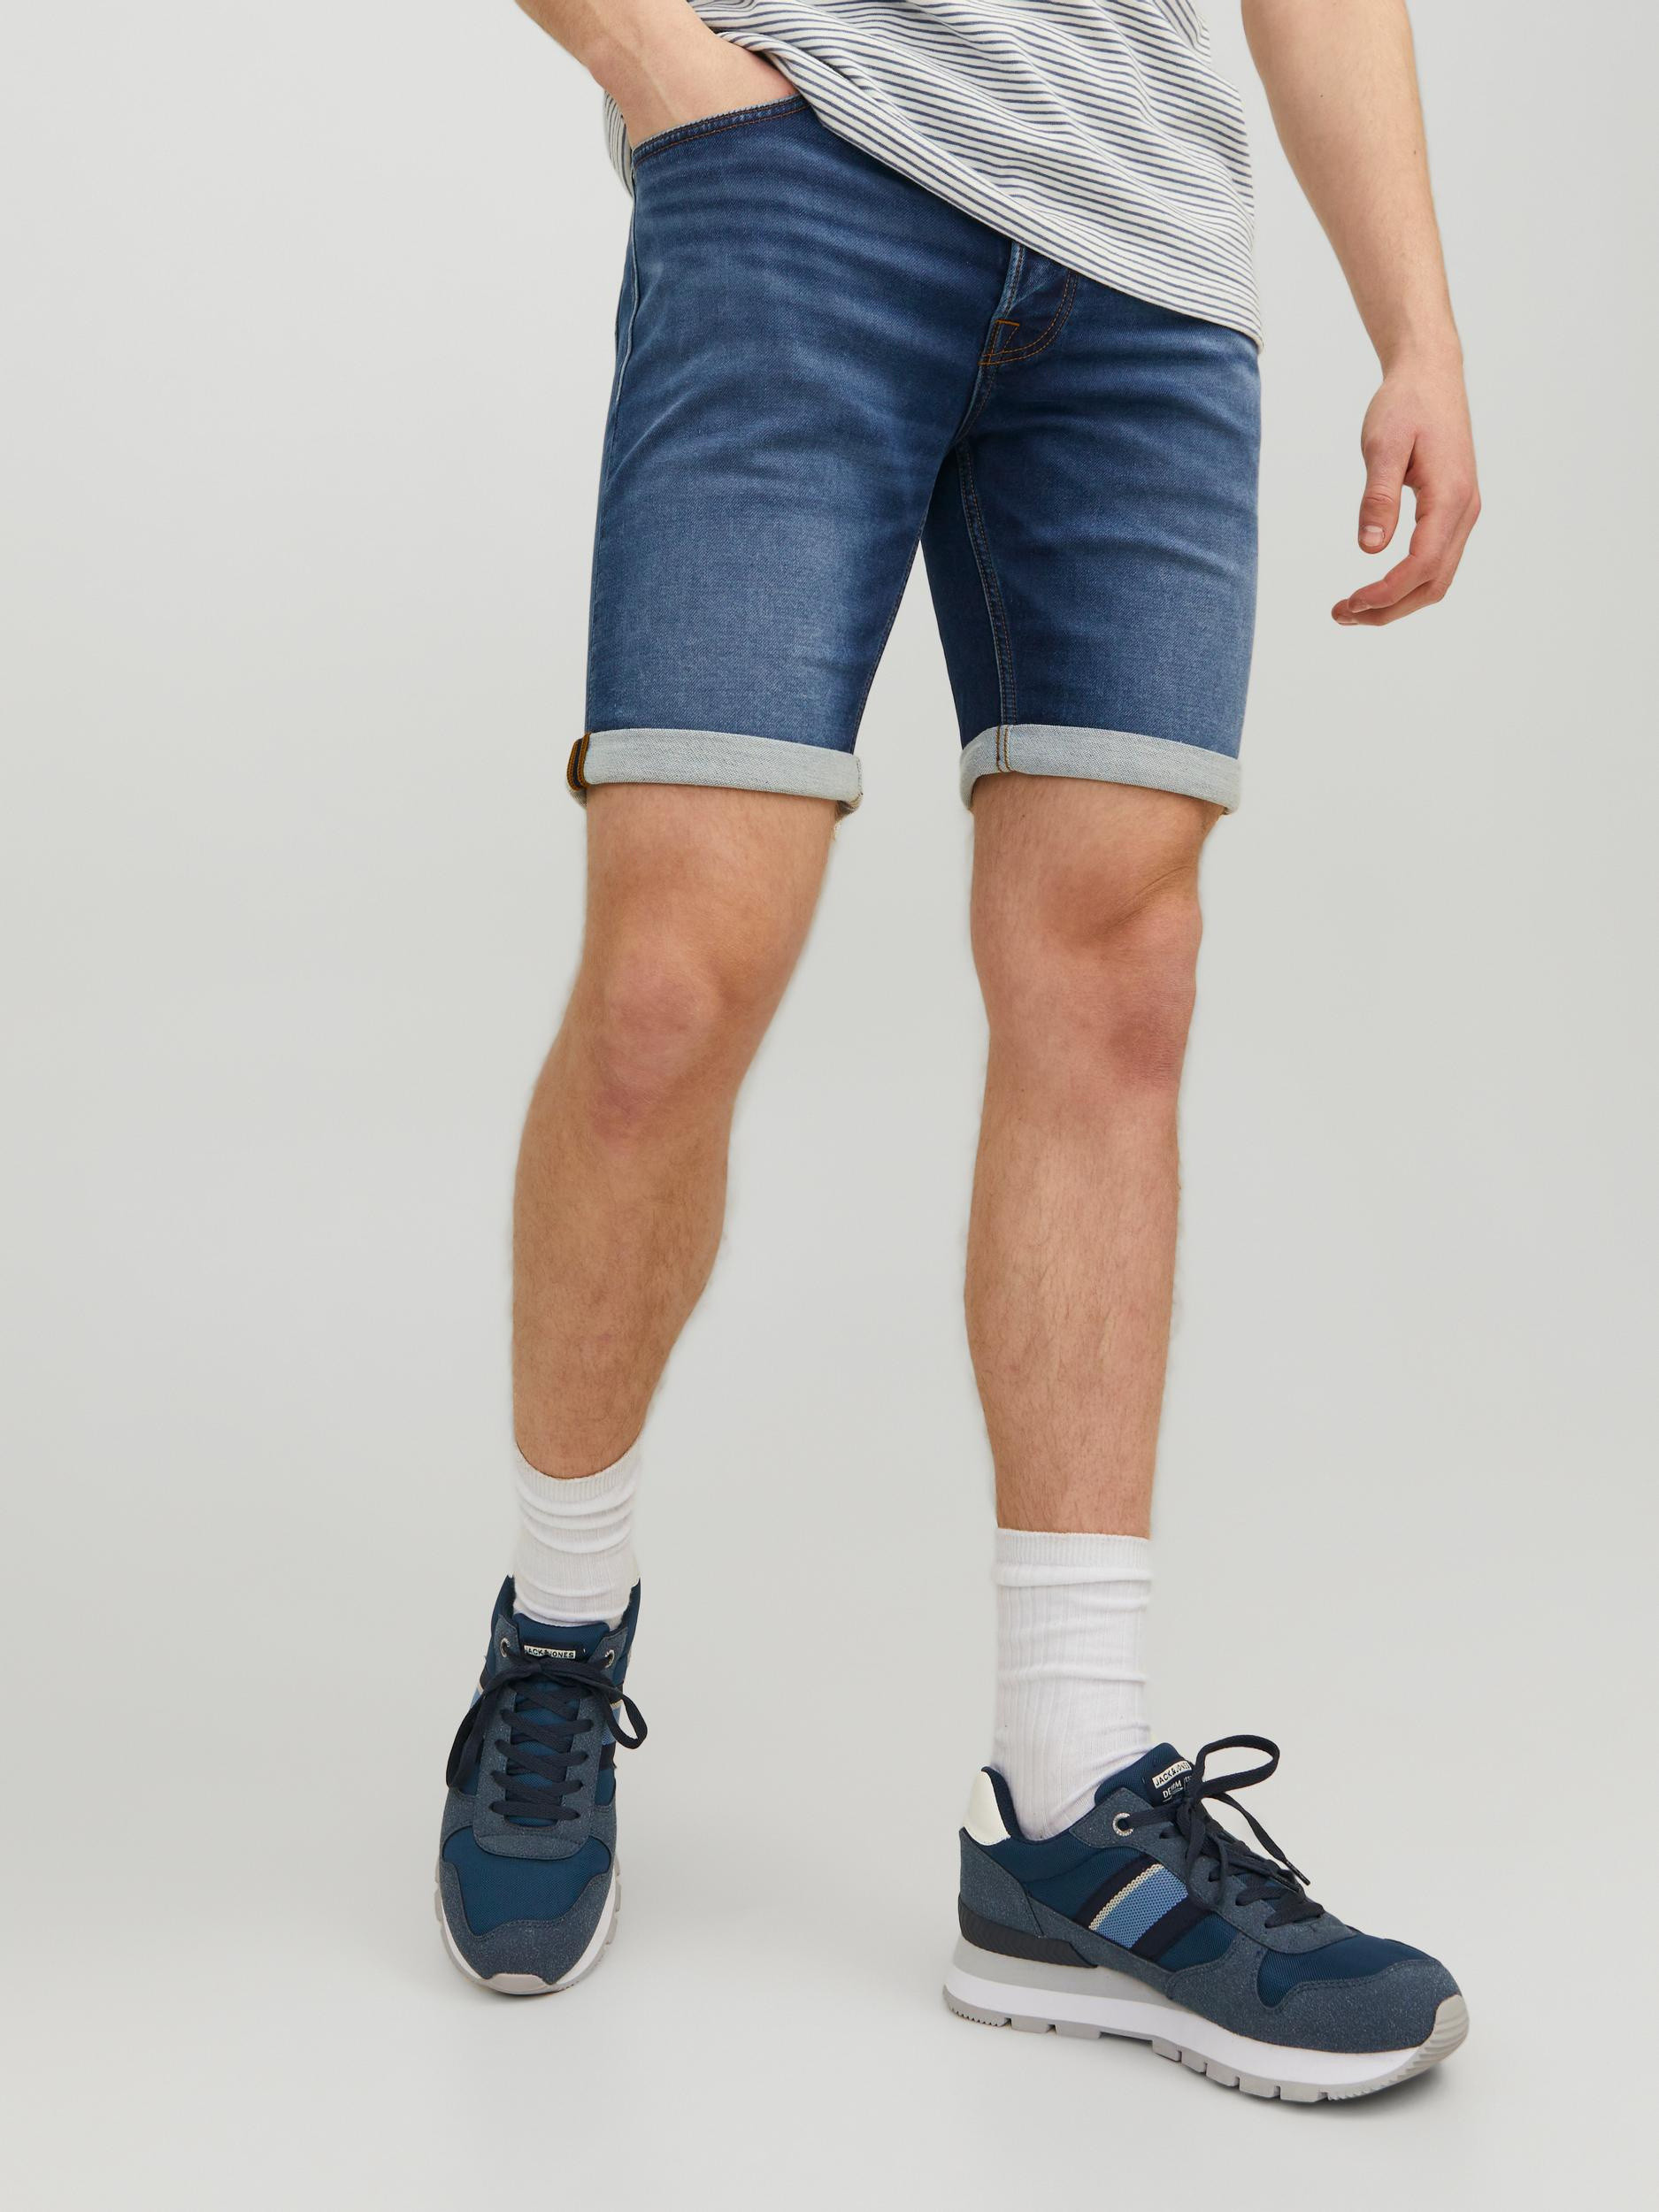 Jack & Jones - Five-pocket jeans bermuda, Denim, large image number 7